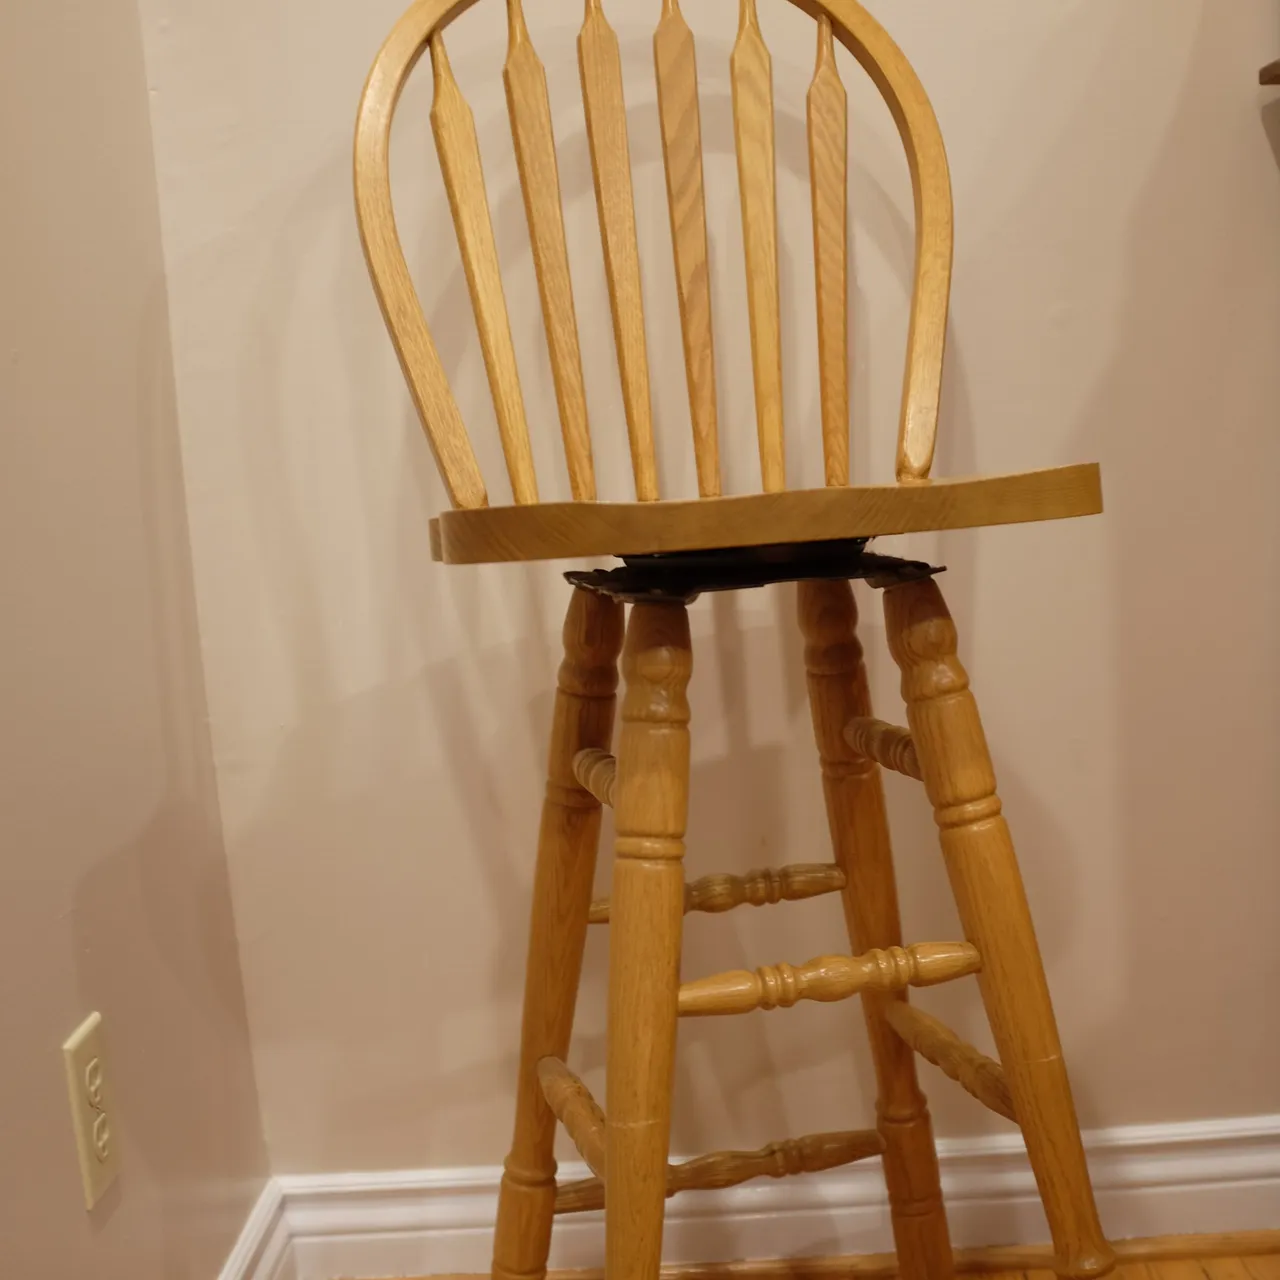 Bar-stool style chair photo 1